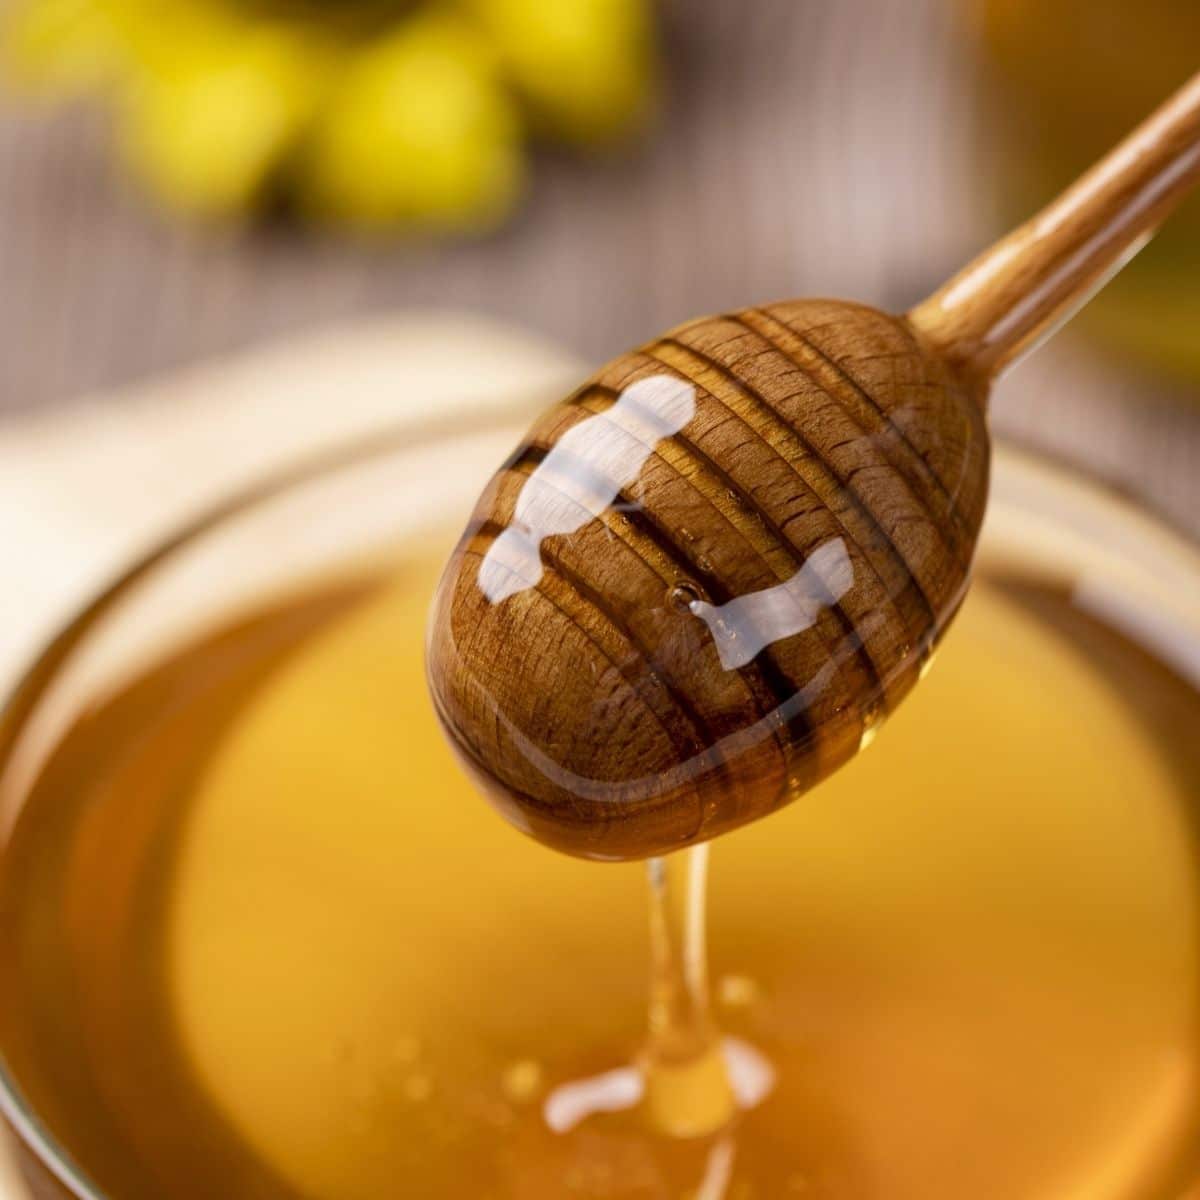 Opções de substituto de mel e como usá-las melhor imagem quadrada de mel na concha do favo de mel.